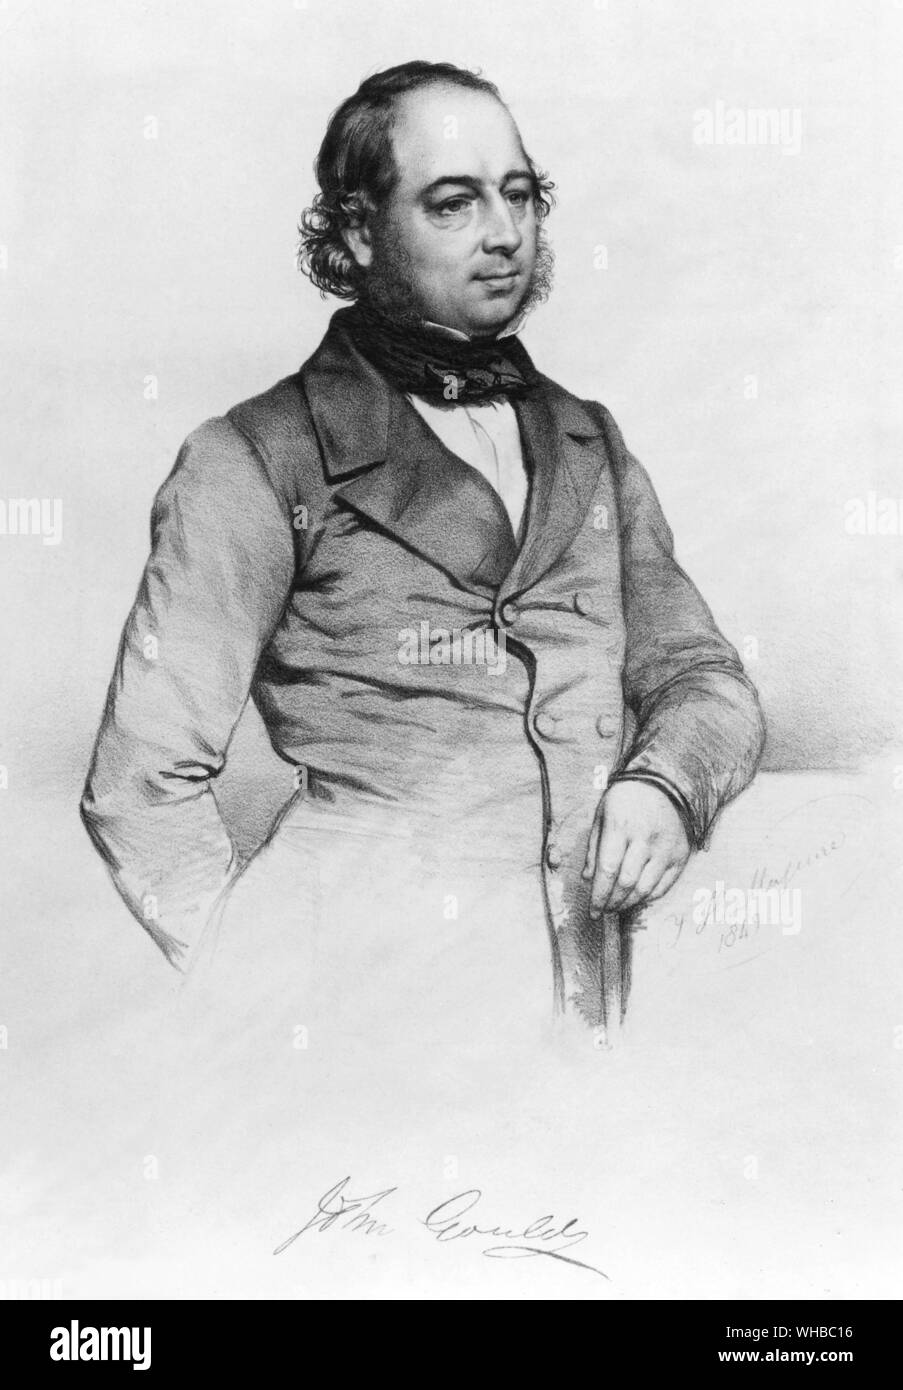 John Gould (14. September 1804 - vom 3. Februar 1881) war ein englischer Ornithologen. Die Gould Liga in Australien wurde nach ihm benannt. Seine Identifizierung von Charles Darwins Finken war entscheidend für die Entwicklung der Theorie von der Entstehung der Arten. Stockfoto